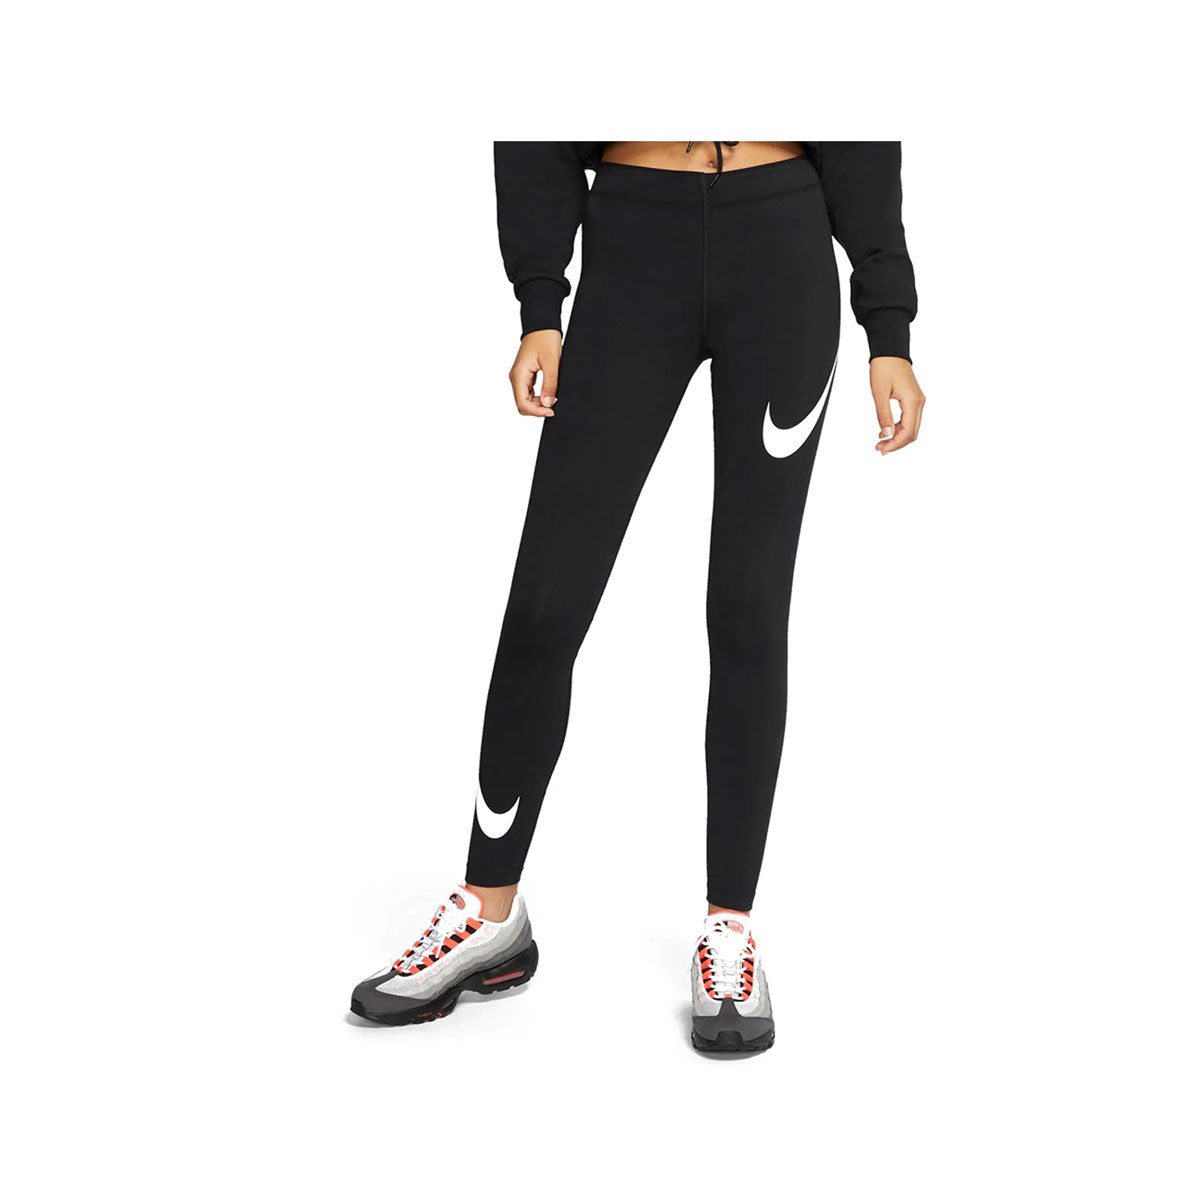 Nike Women's Sportswear Leggings Swoosh Tights